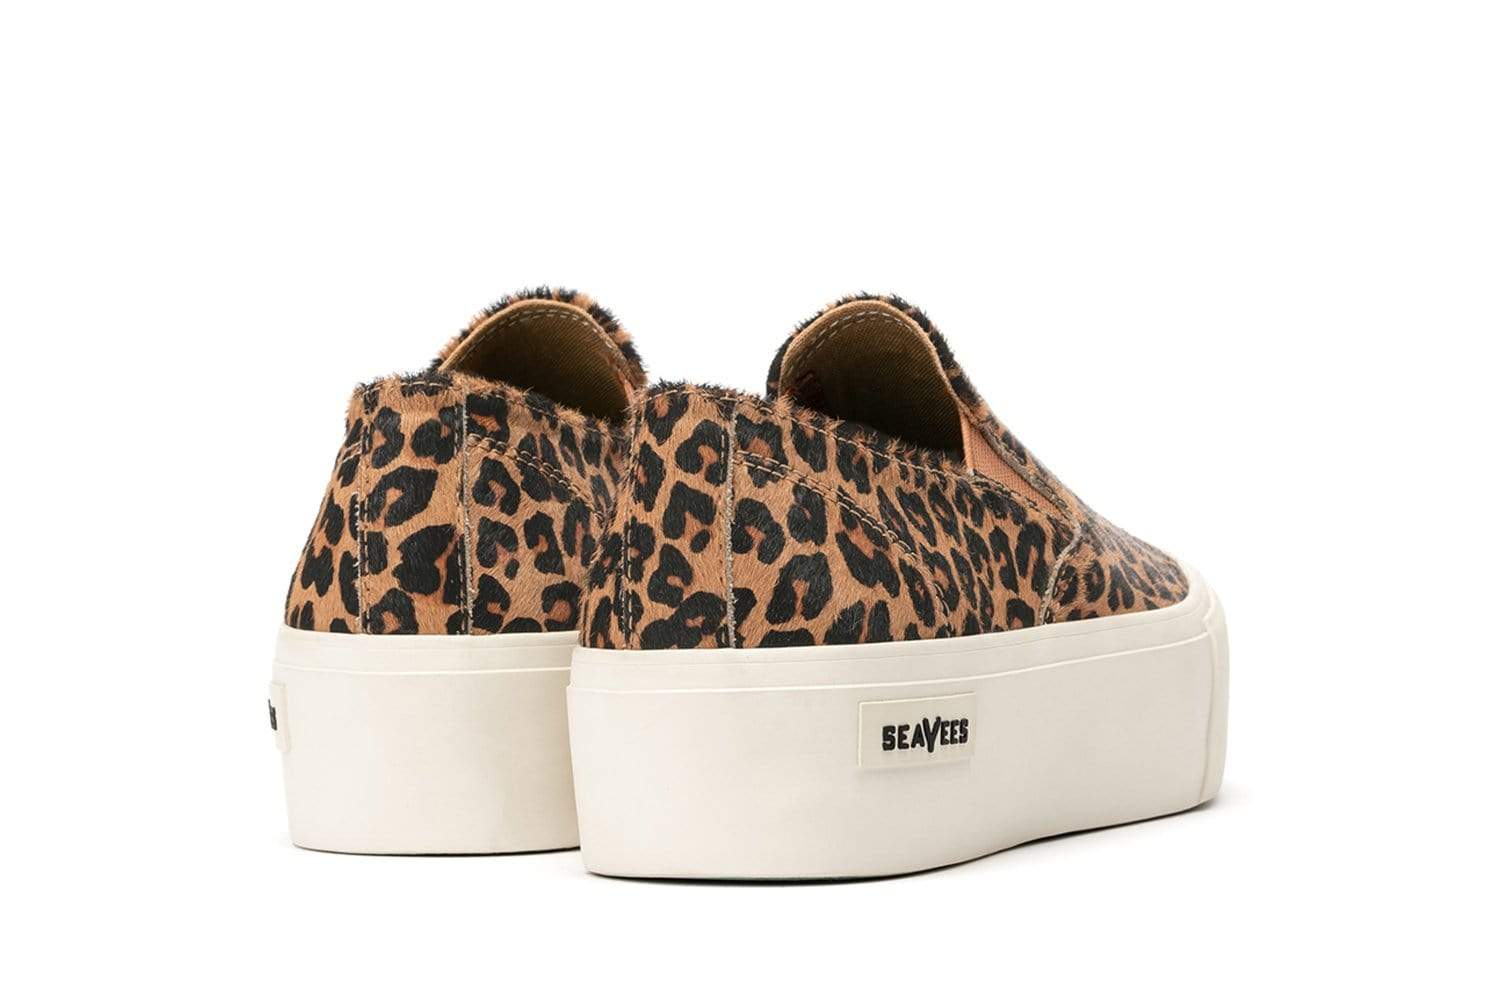 seavees leopard sneakers